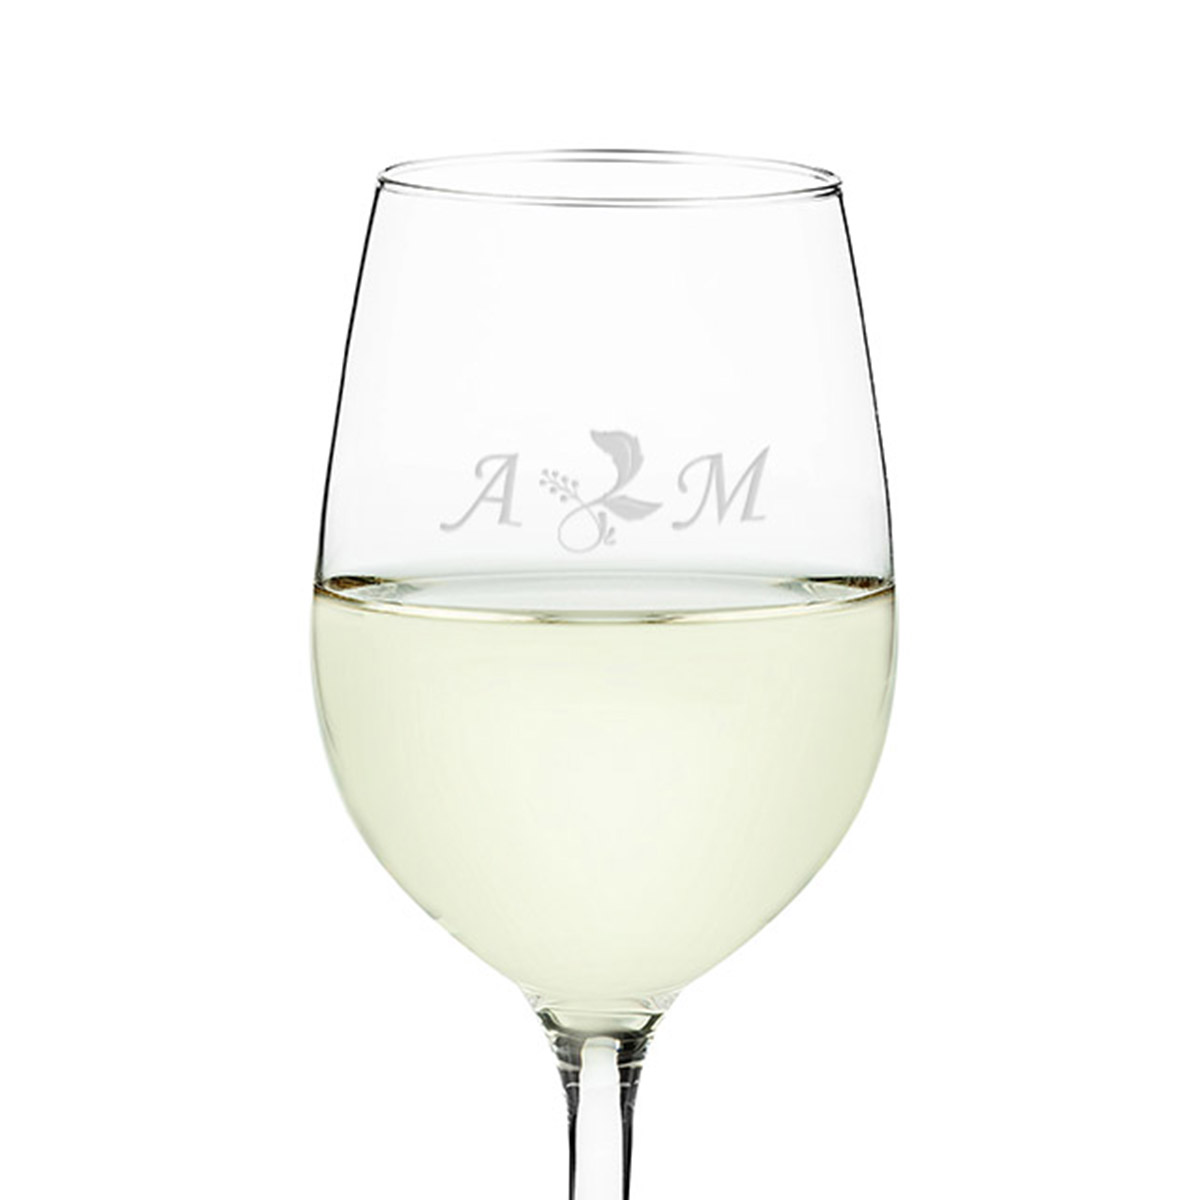 Copa de vino personalizada 17.25 Copa de vino tinto Texto personalizado  Copa de vino Agregue su texto Copa de vino blanco Copa de vino de tallo  largo